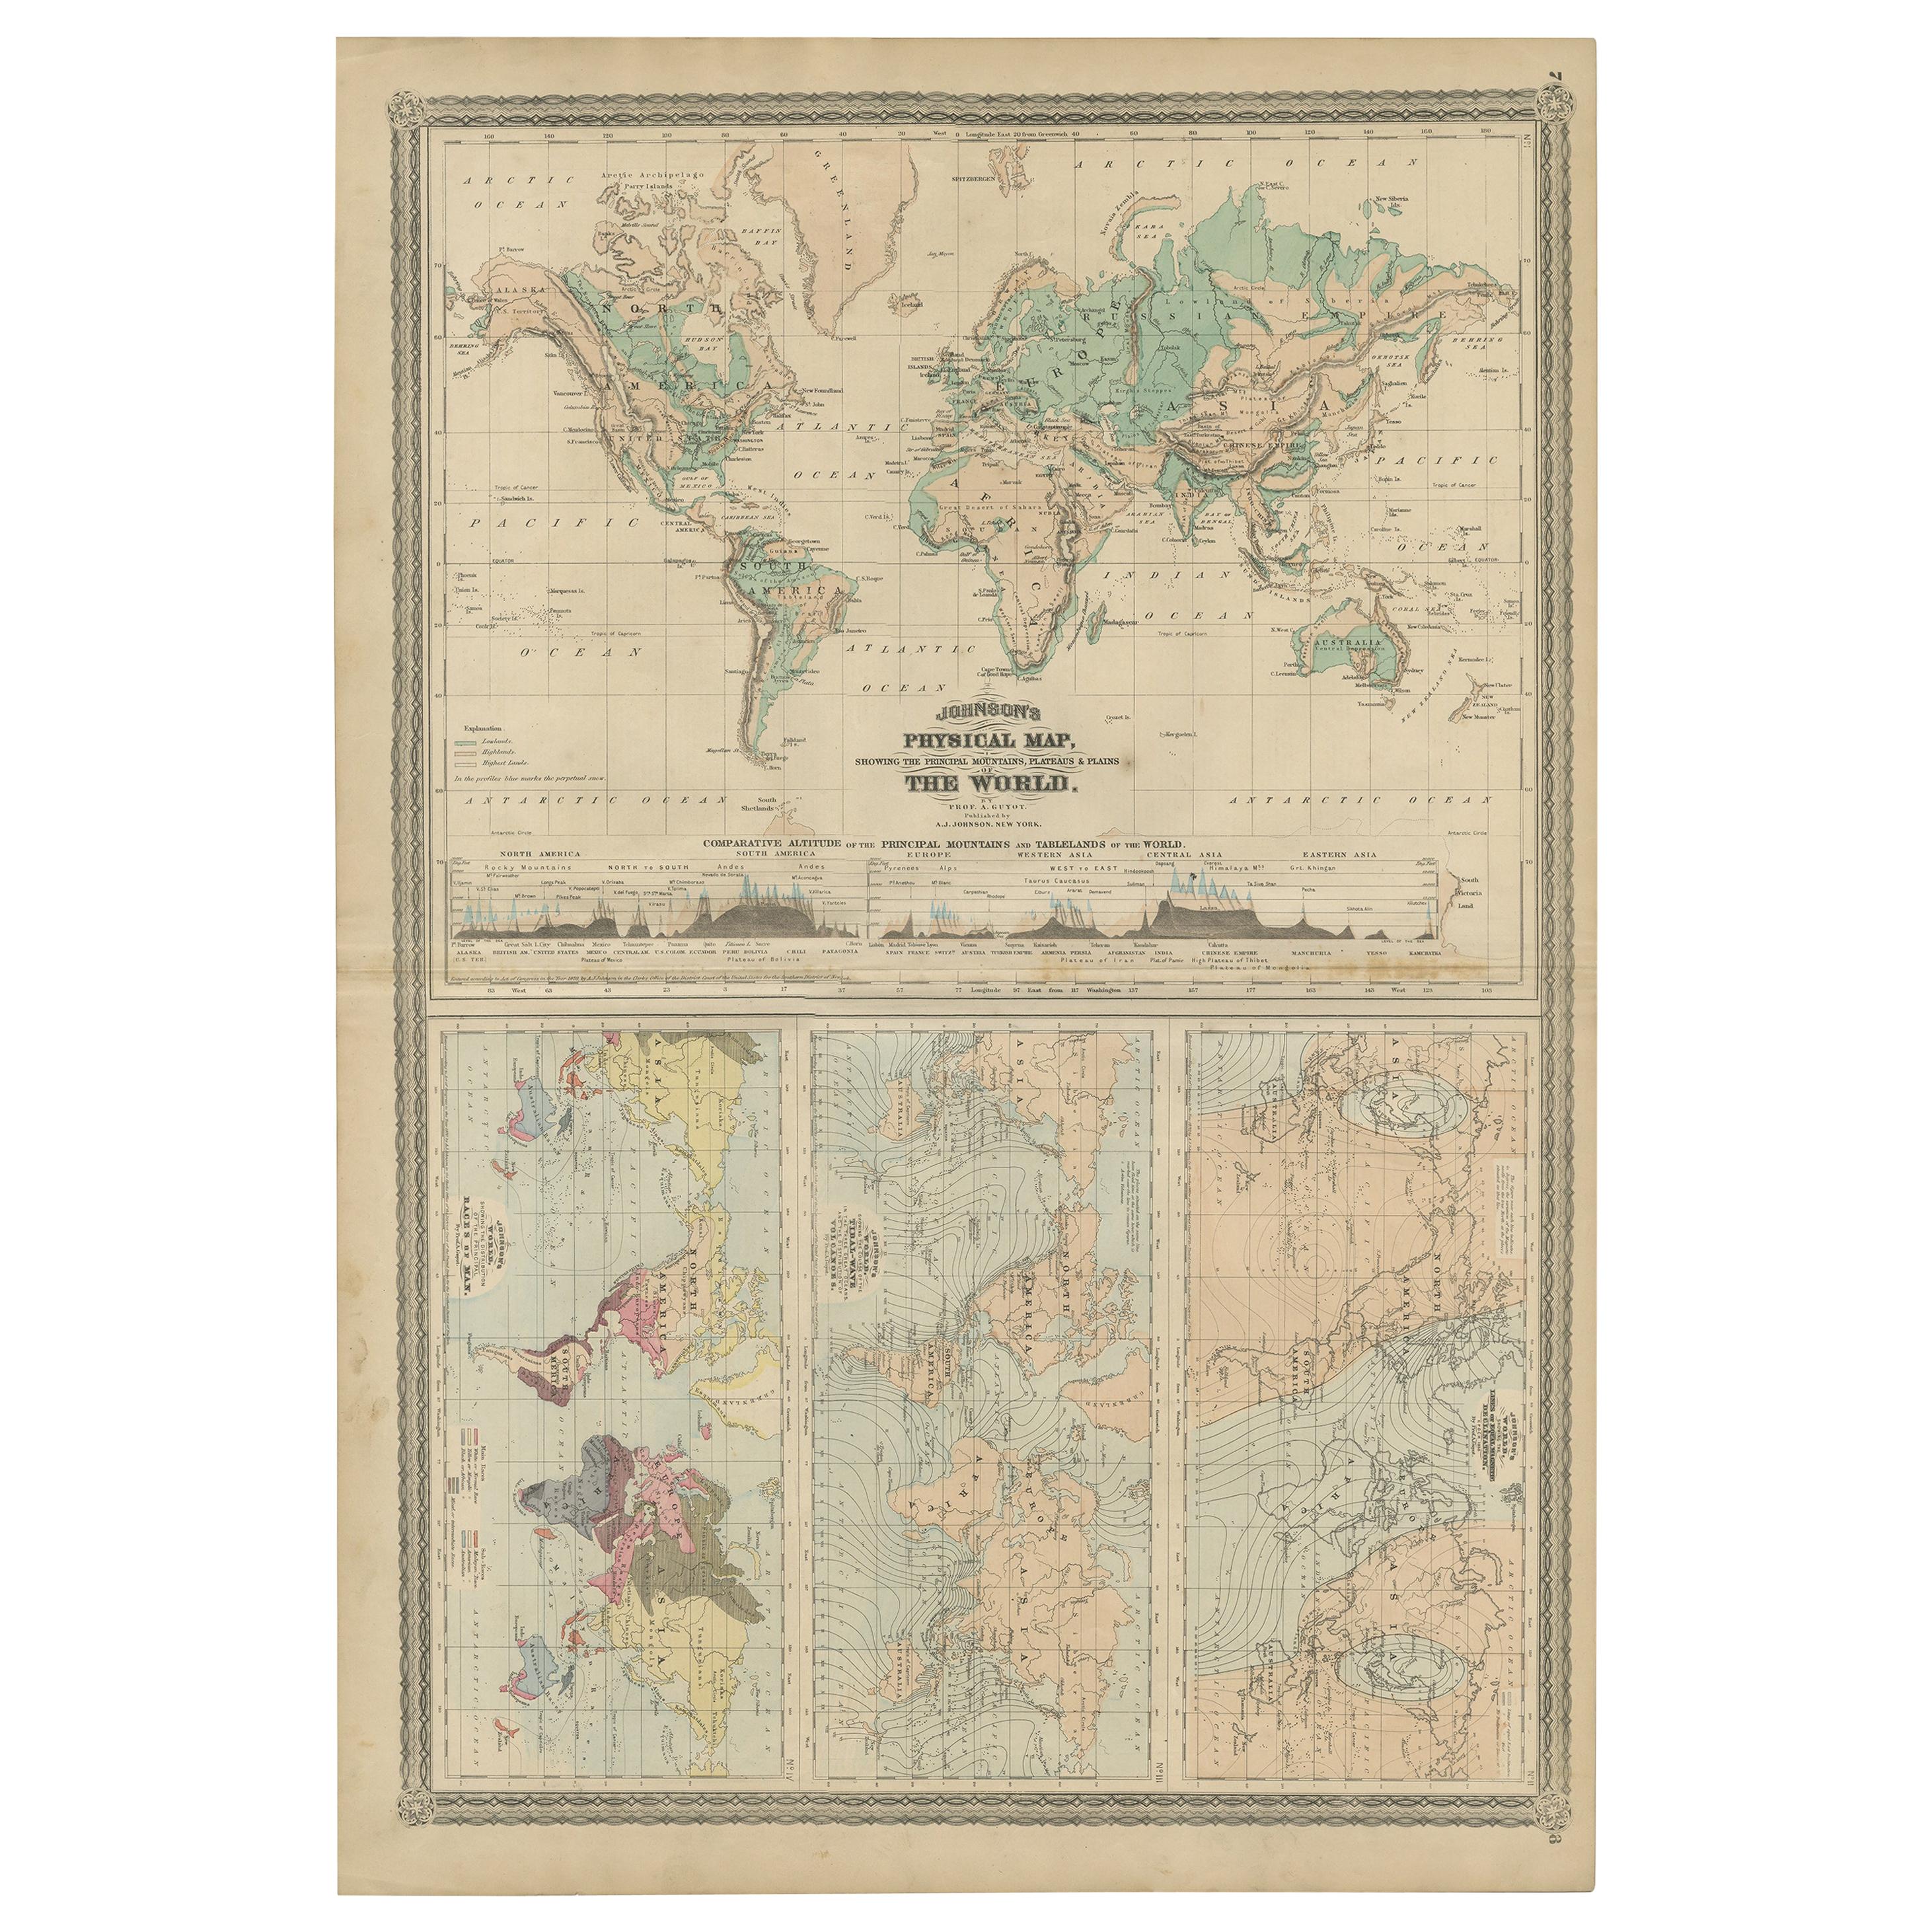 Quatre cartes physiques du monde sur une seule feuille, 1872